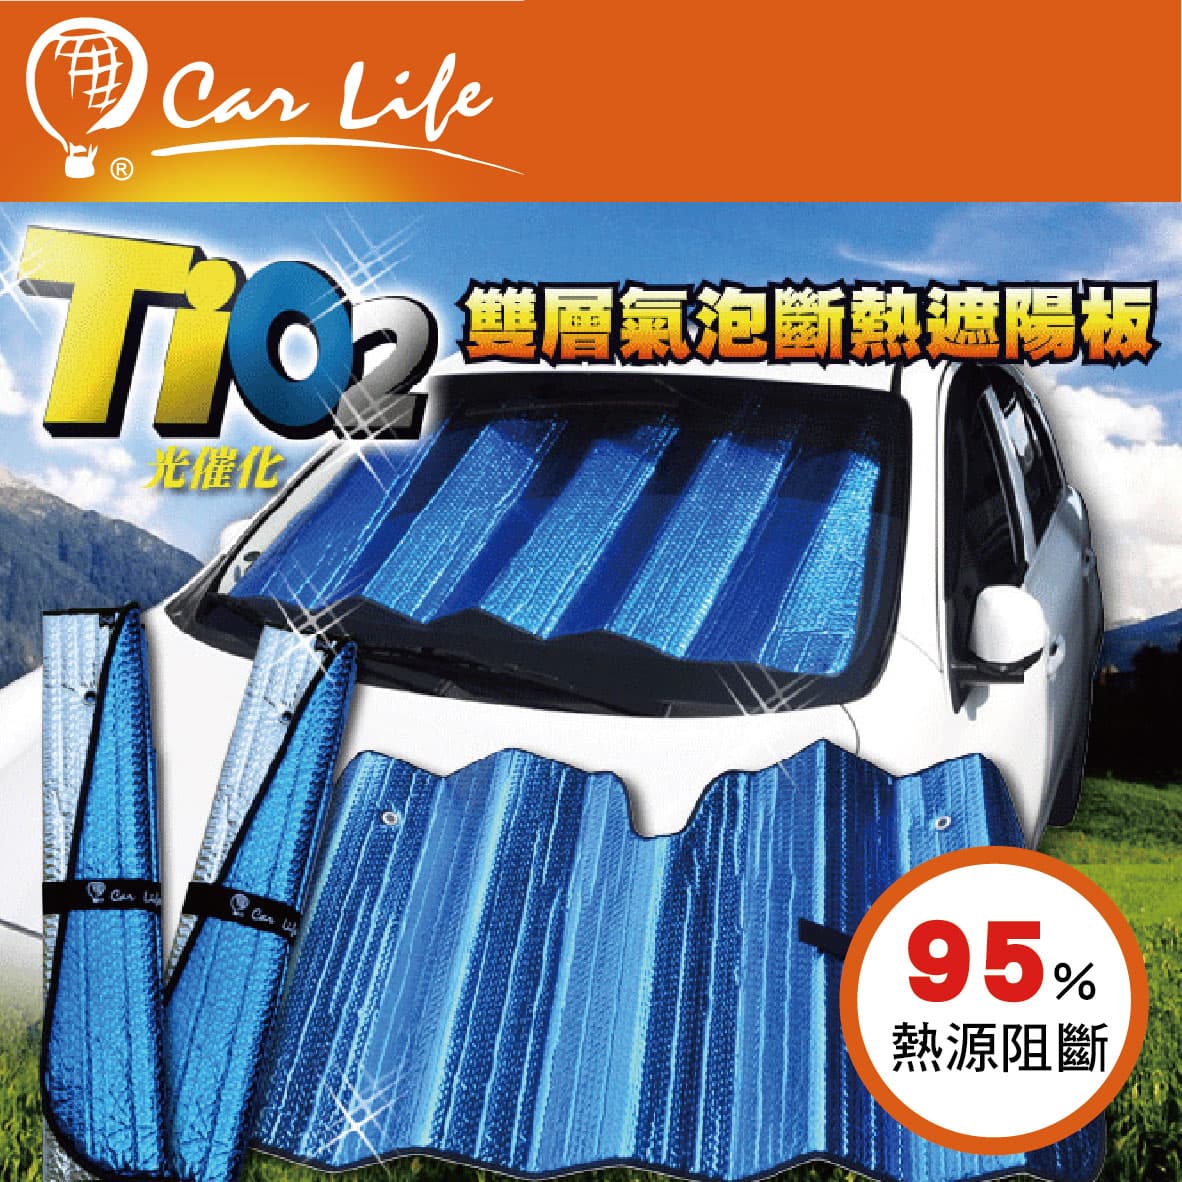 真便宜 CARLIFE TiO2光觸媒 雙層氣泡前擋遮陽簾130x68cm(轎車用)